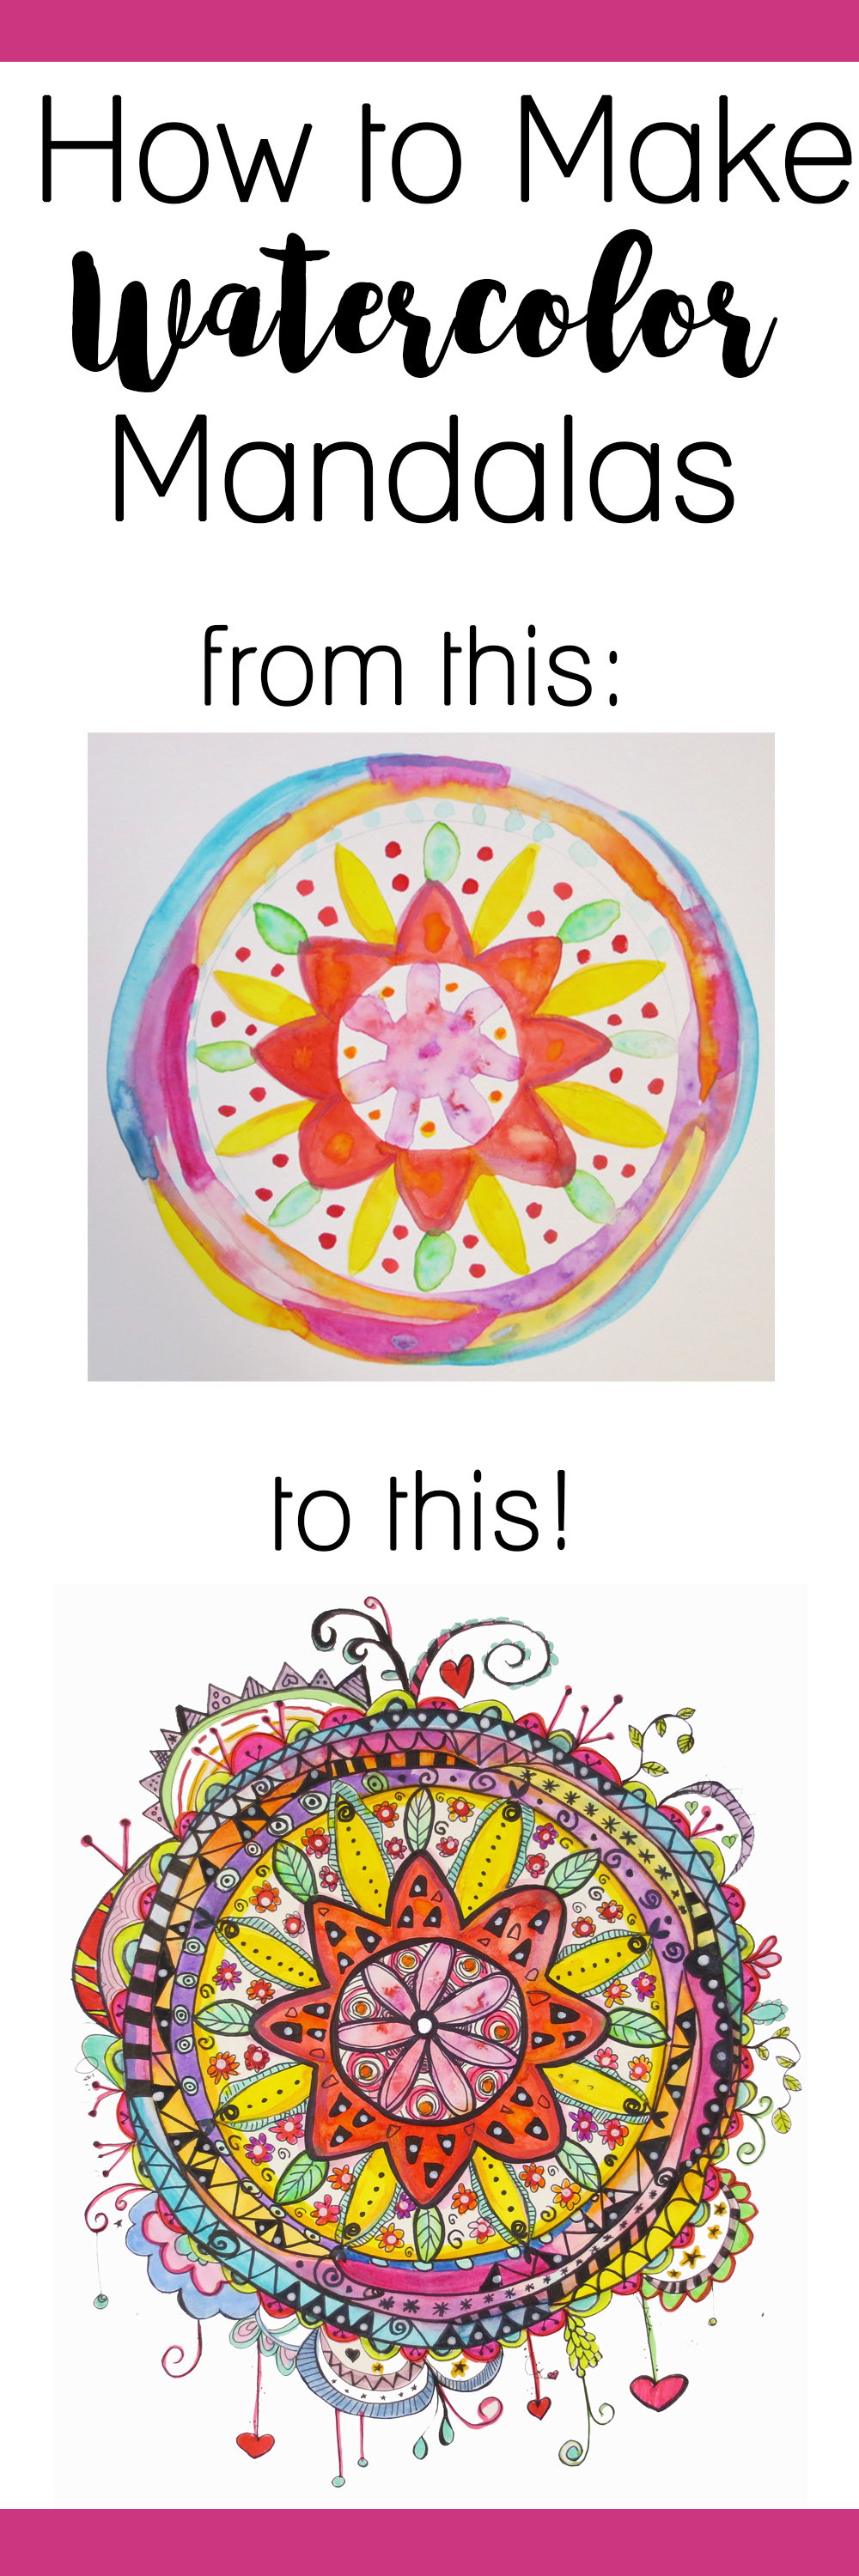 How to Make Watercolor Mandalas